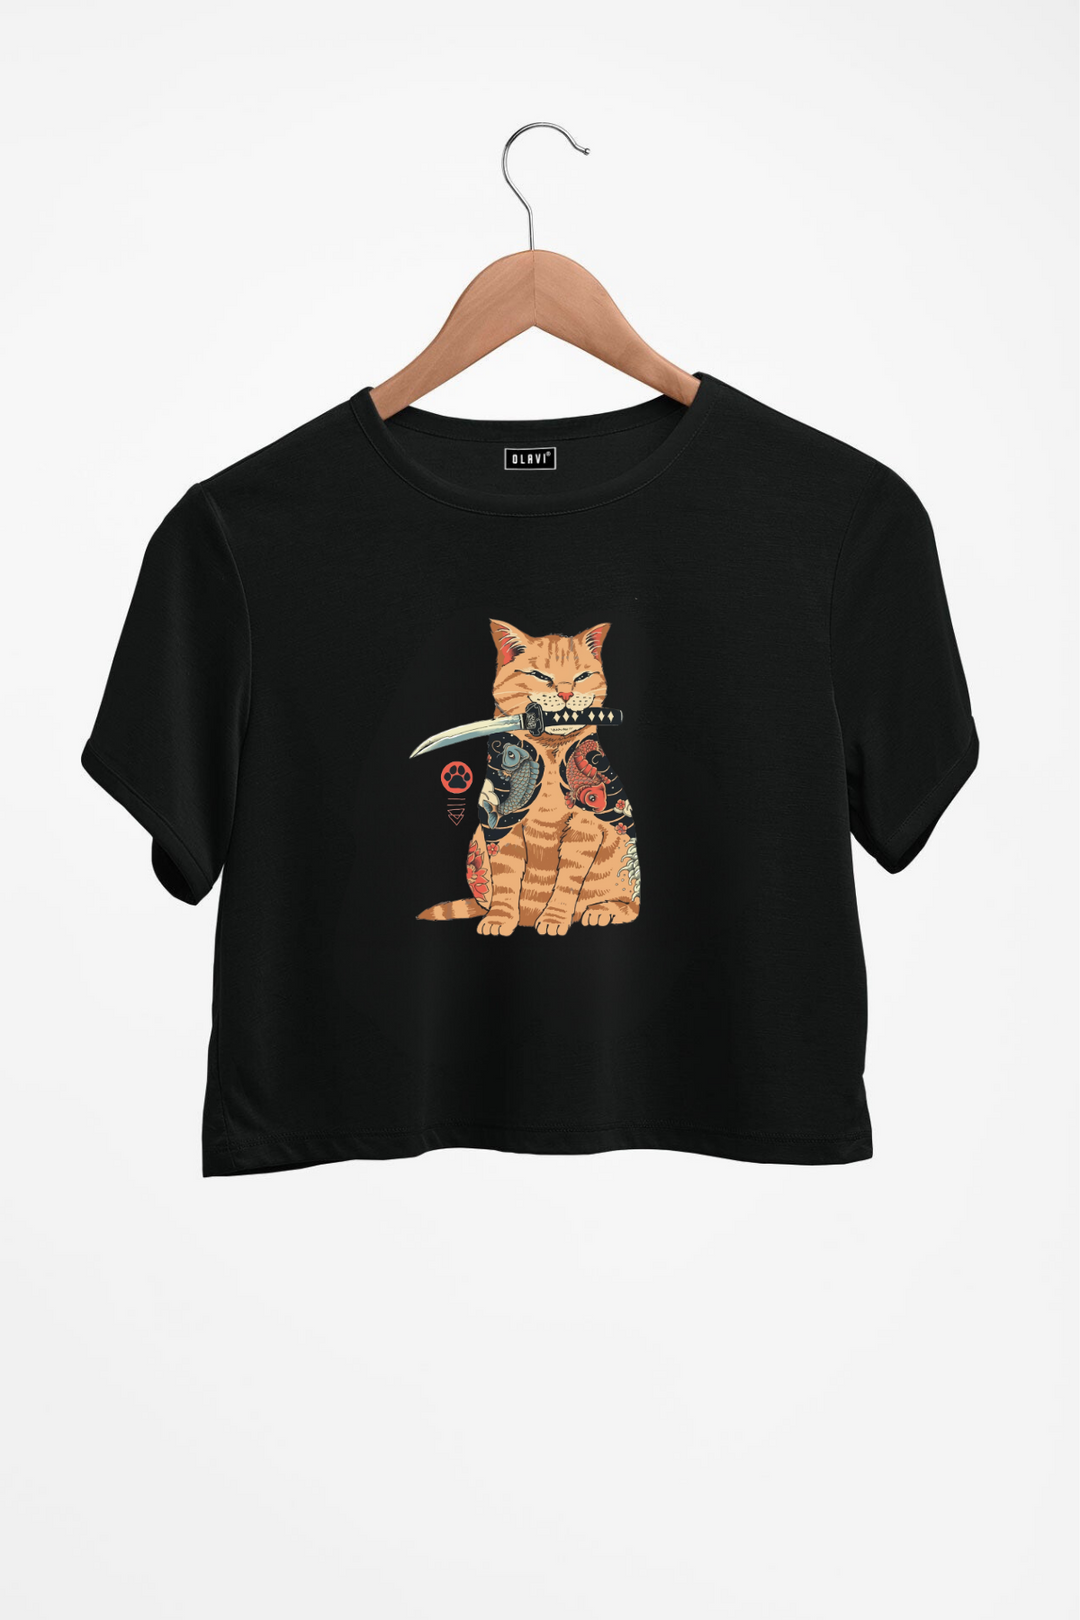 Samurai Cat Printed Crop Top